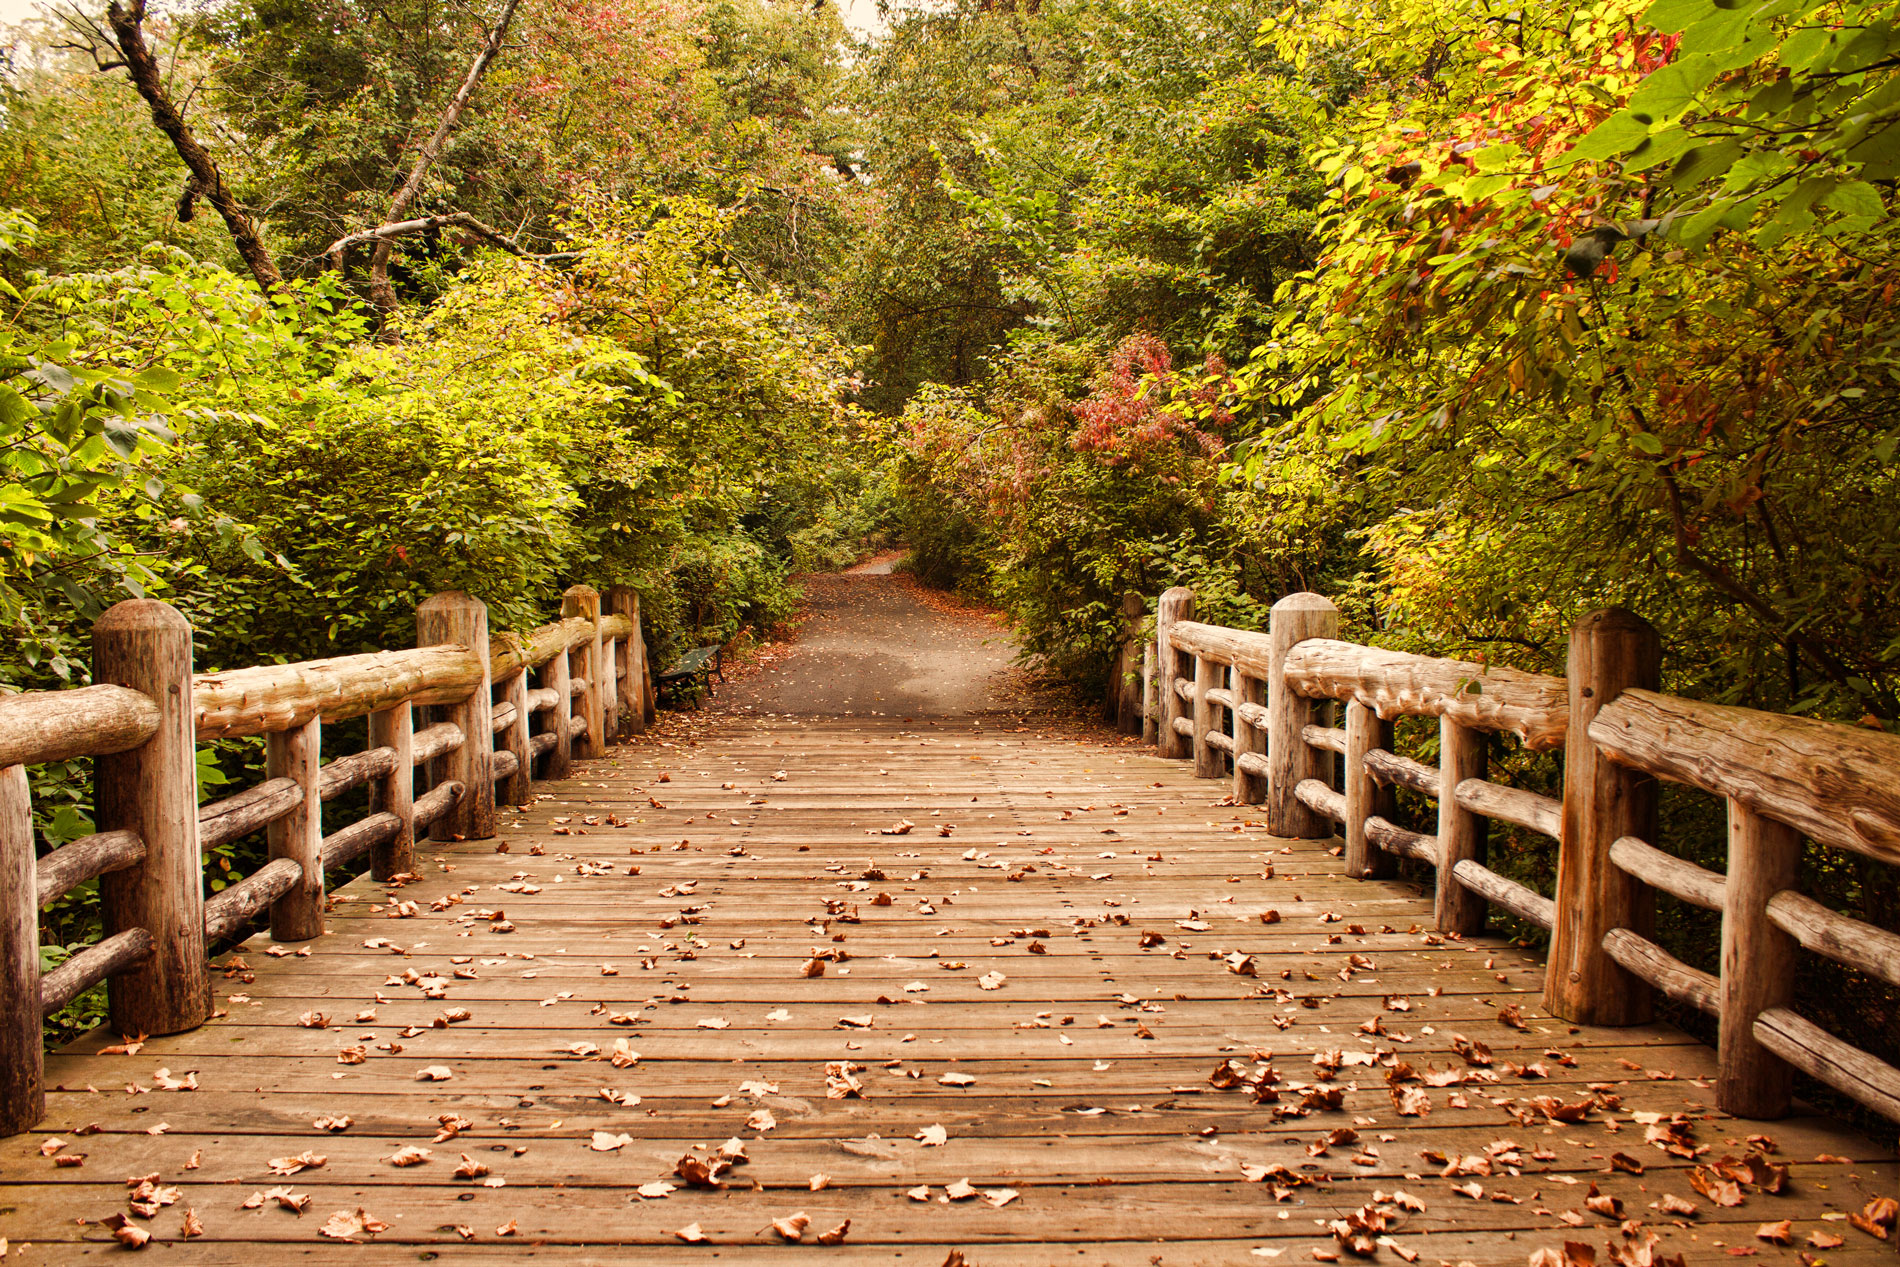 "A Bridge Into Autumn"